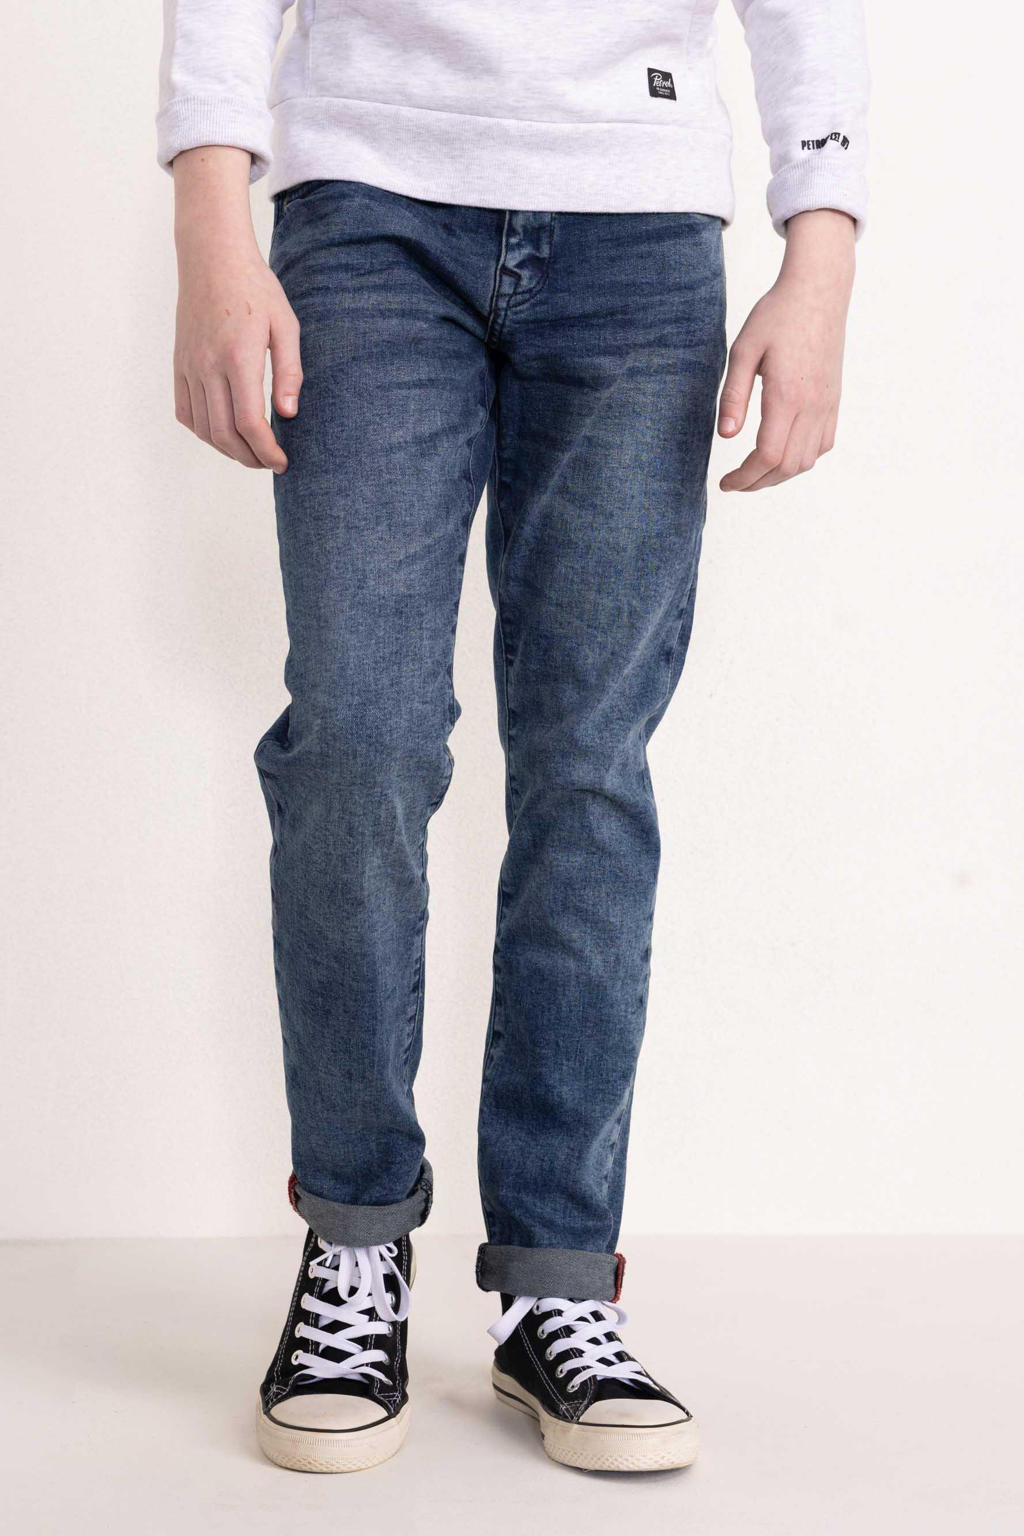 Stonewashed jongens Petrol Industries slim fit jeans Seaham van denim 